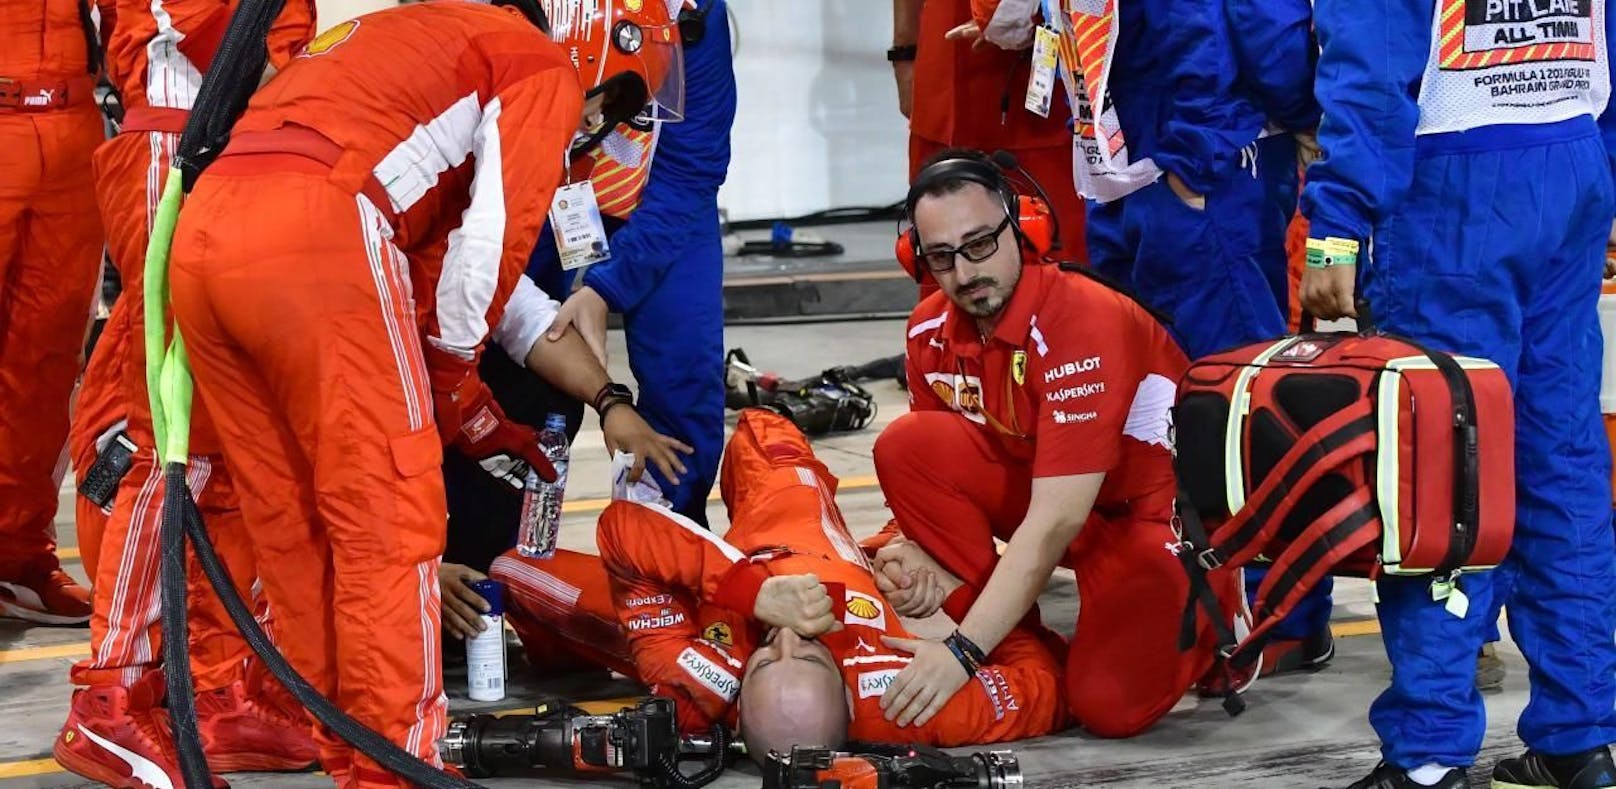 Boxendrama bei Ferrari: Wie konnte das passieren?